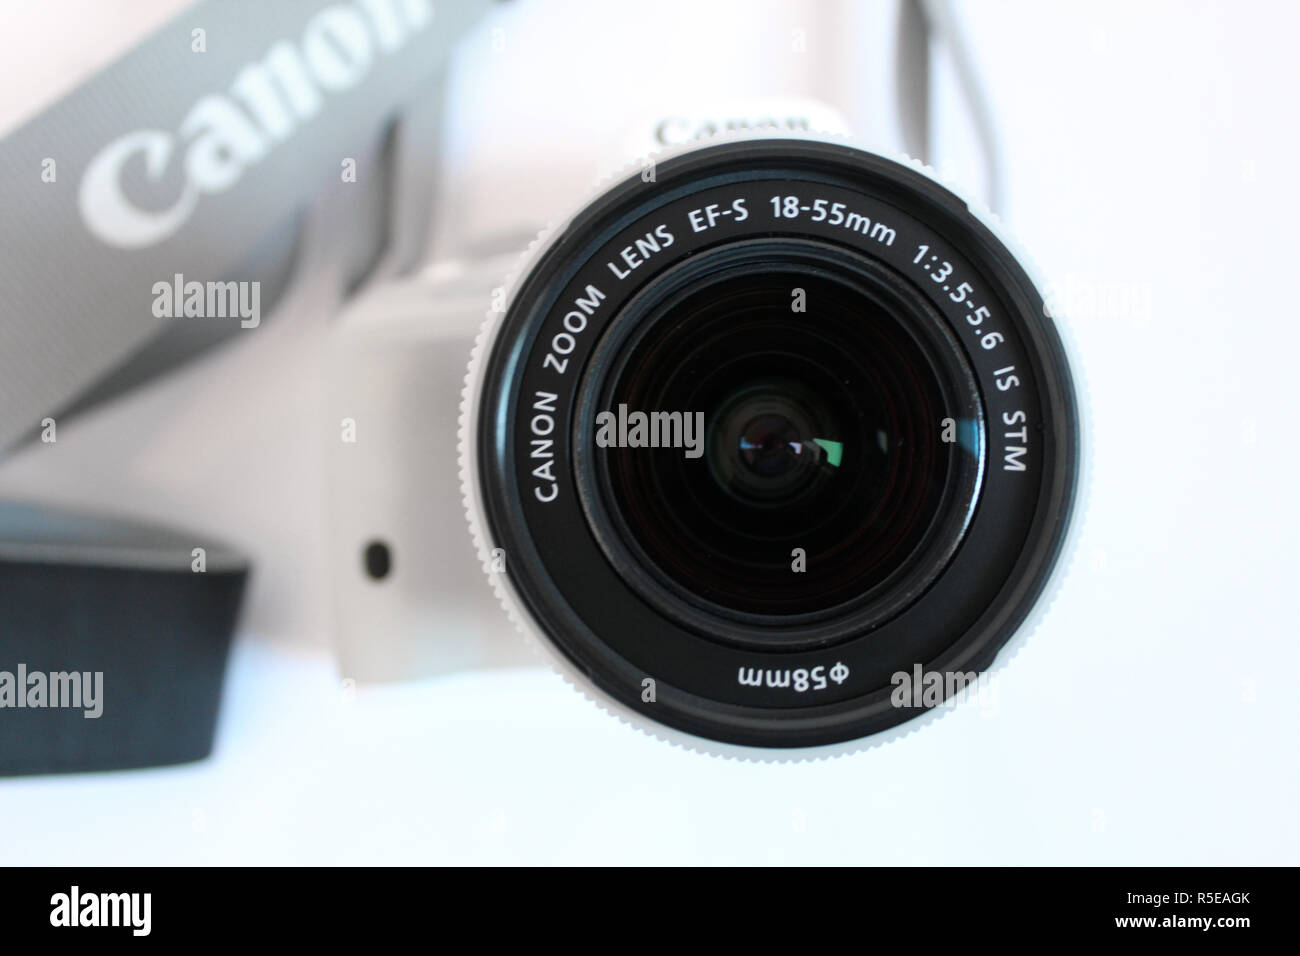 Kamera Canon 100d Eos, Objektiv EFS 18-55mm, Editorial, illustrative Stockfoto